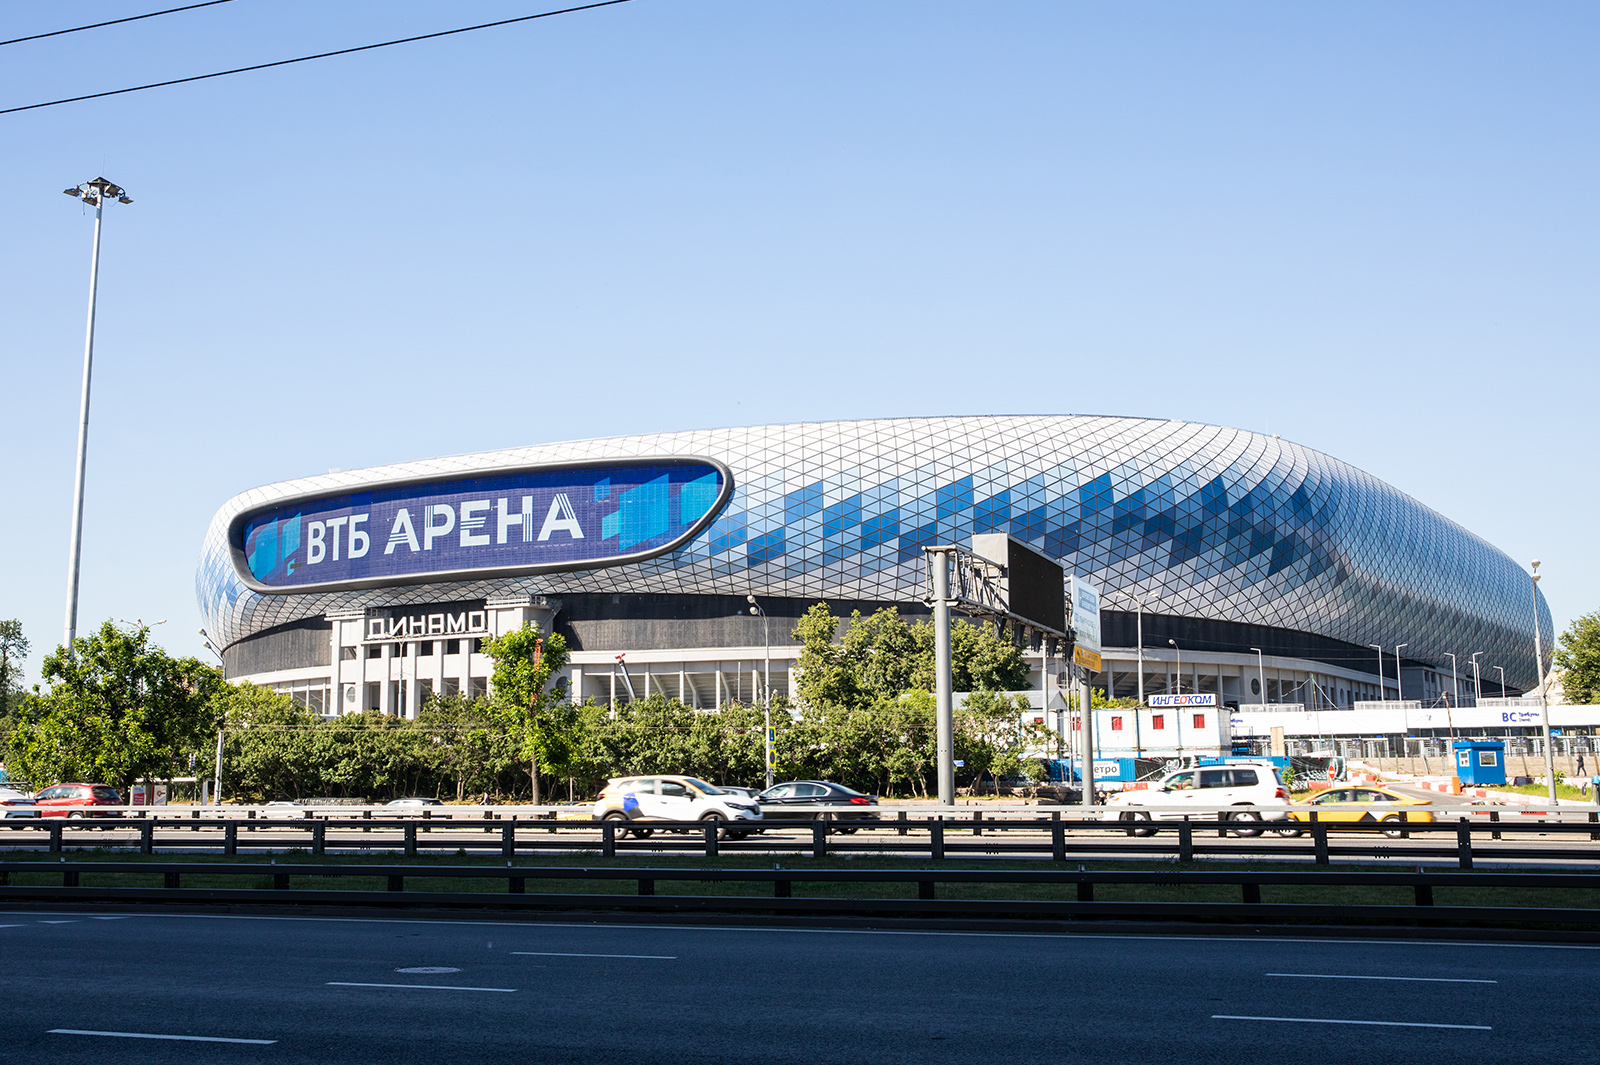 ВТБ Арена совместно с проектом «Москва глазами инженера» запускает экскурсионные туры